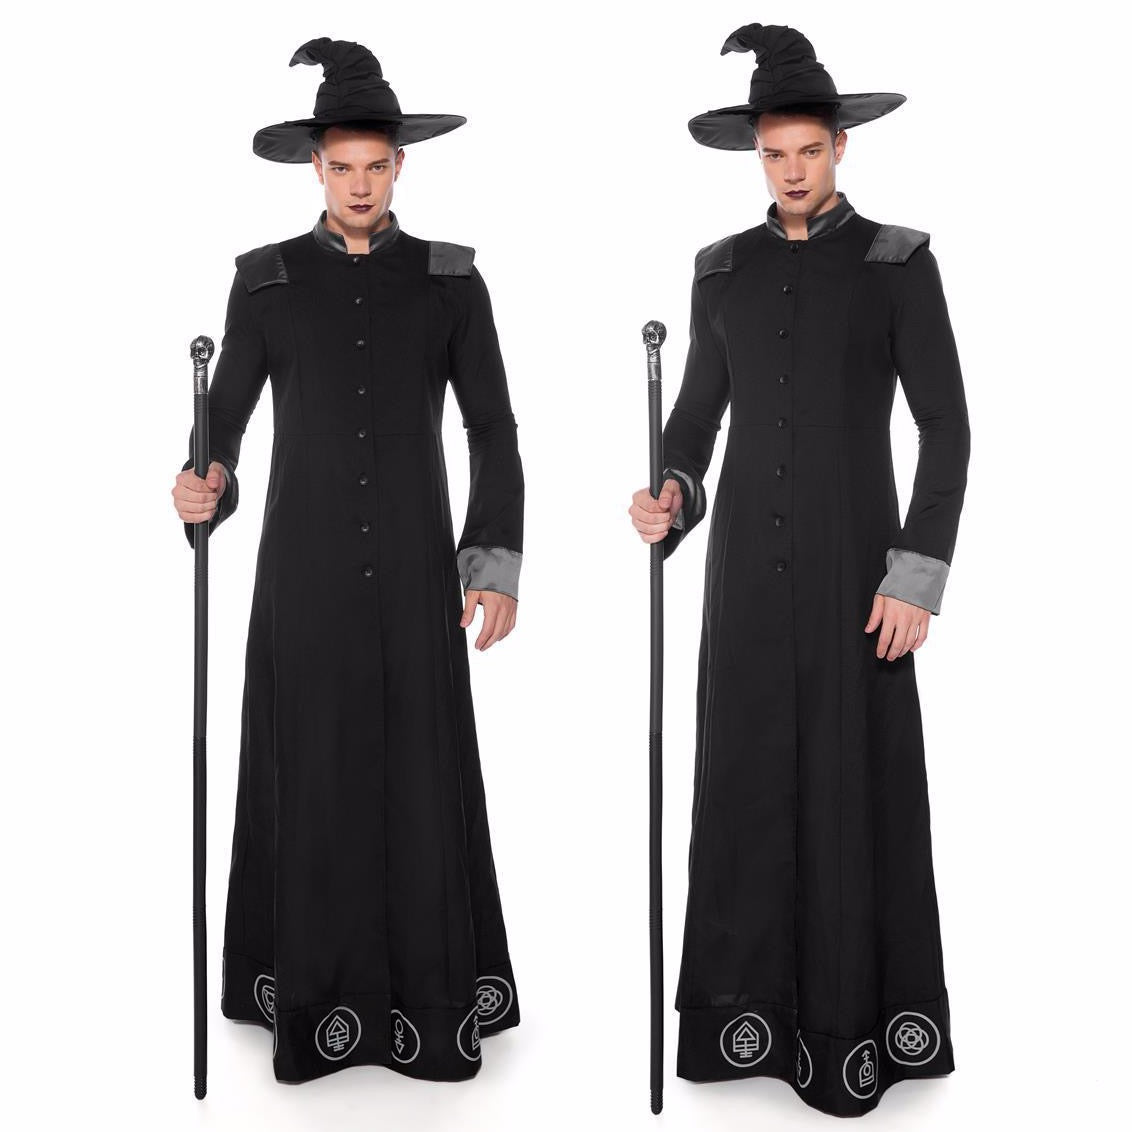 Men's Occult Wizard Costume